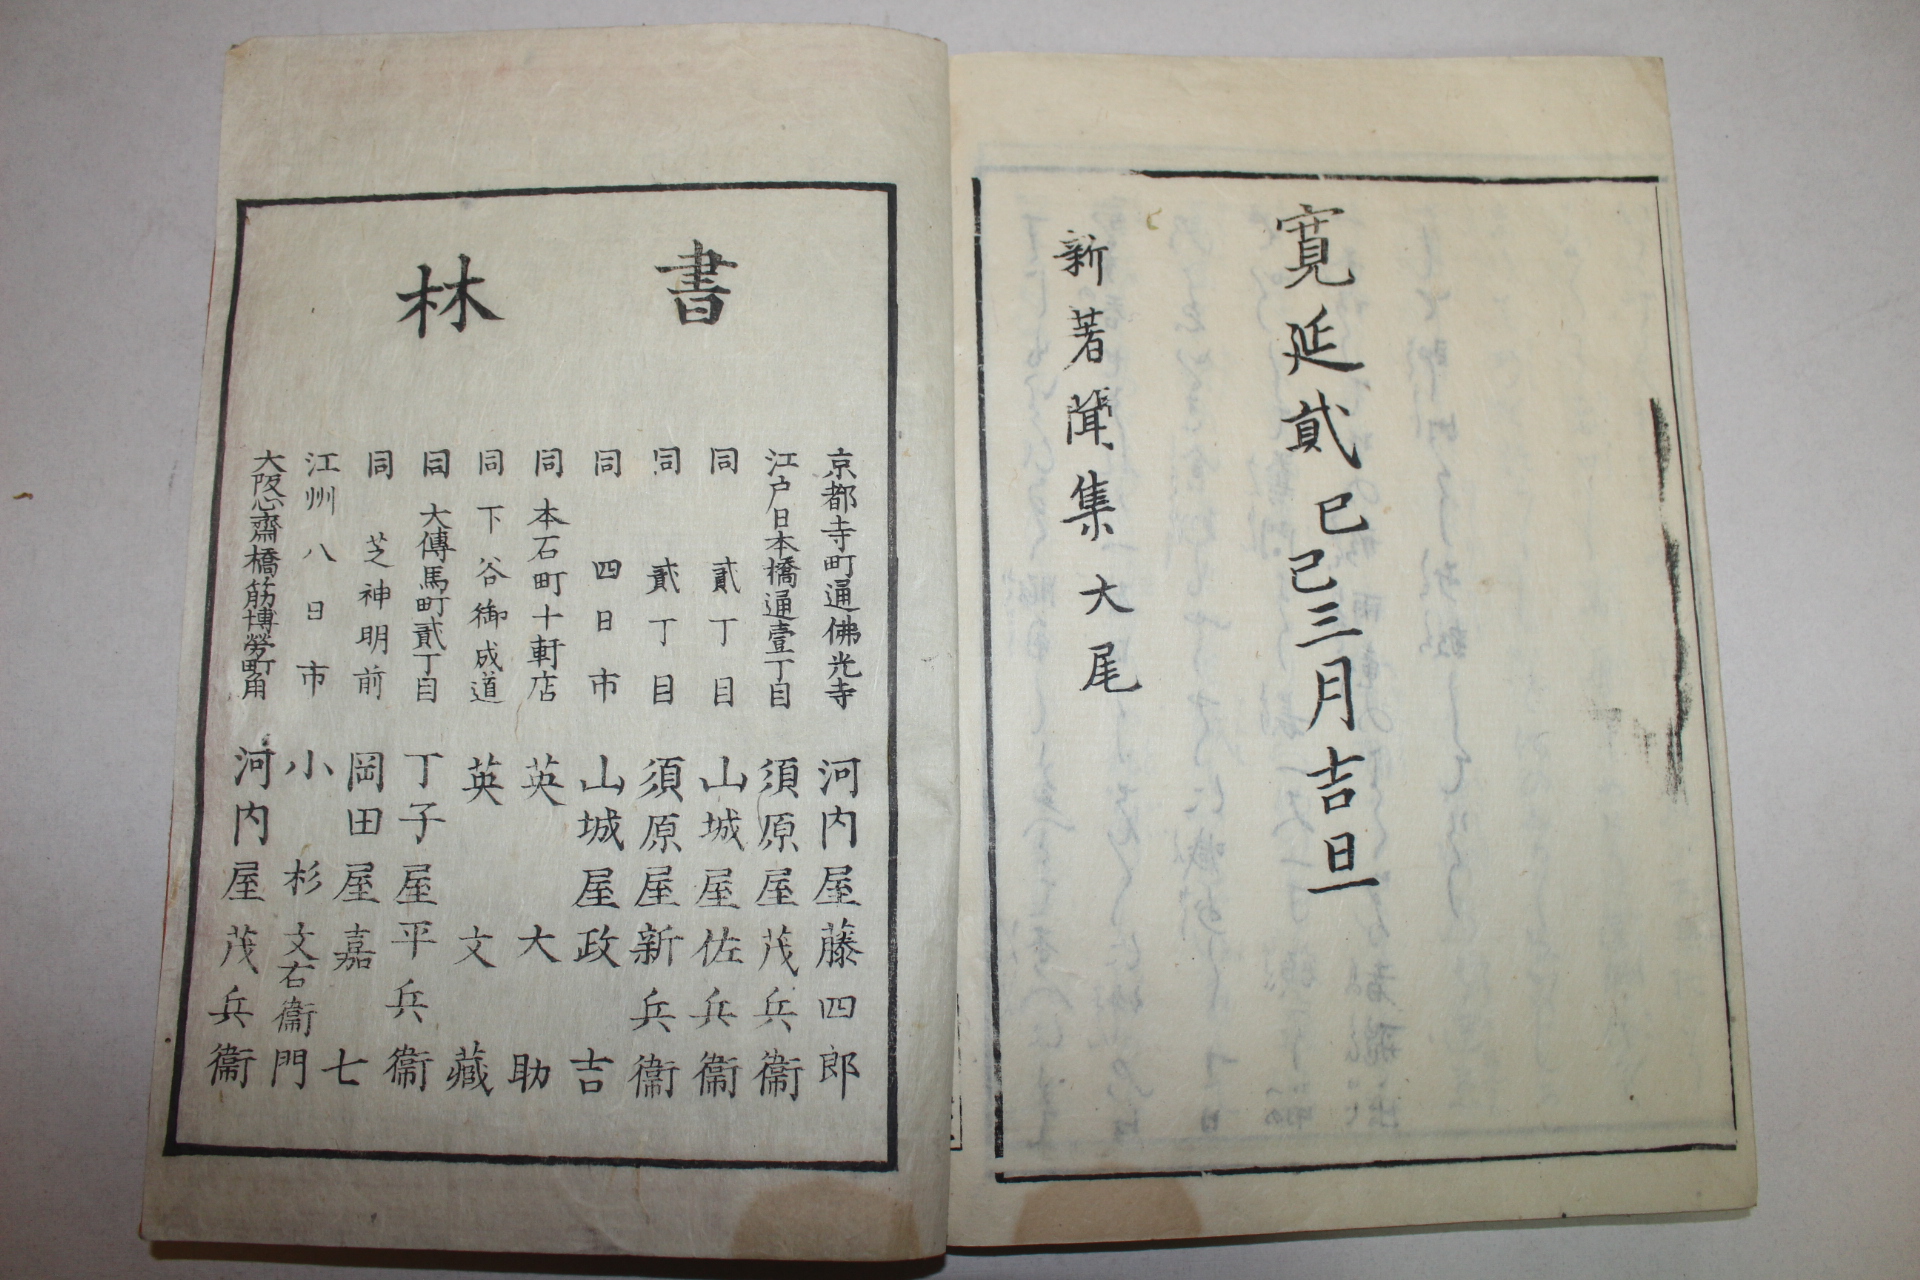 1790년(寬政2年) 일본목판본 신저문집(新著聞集) 1책